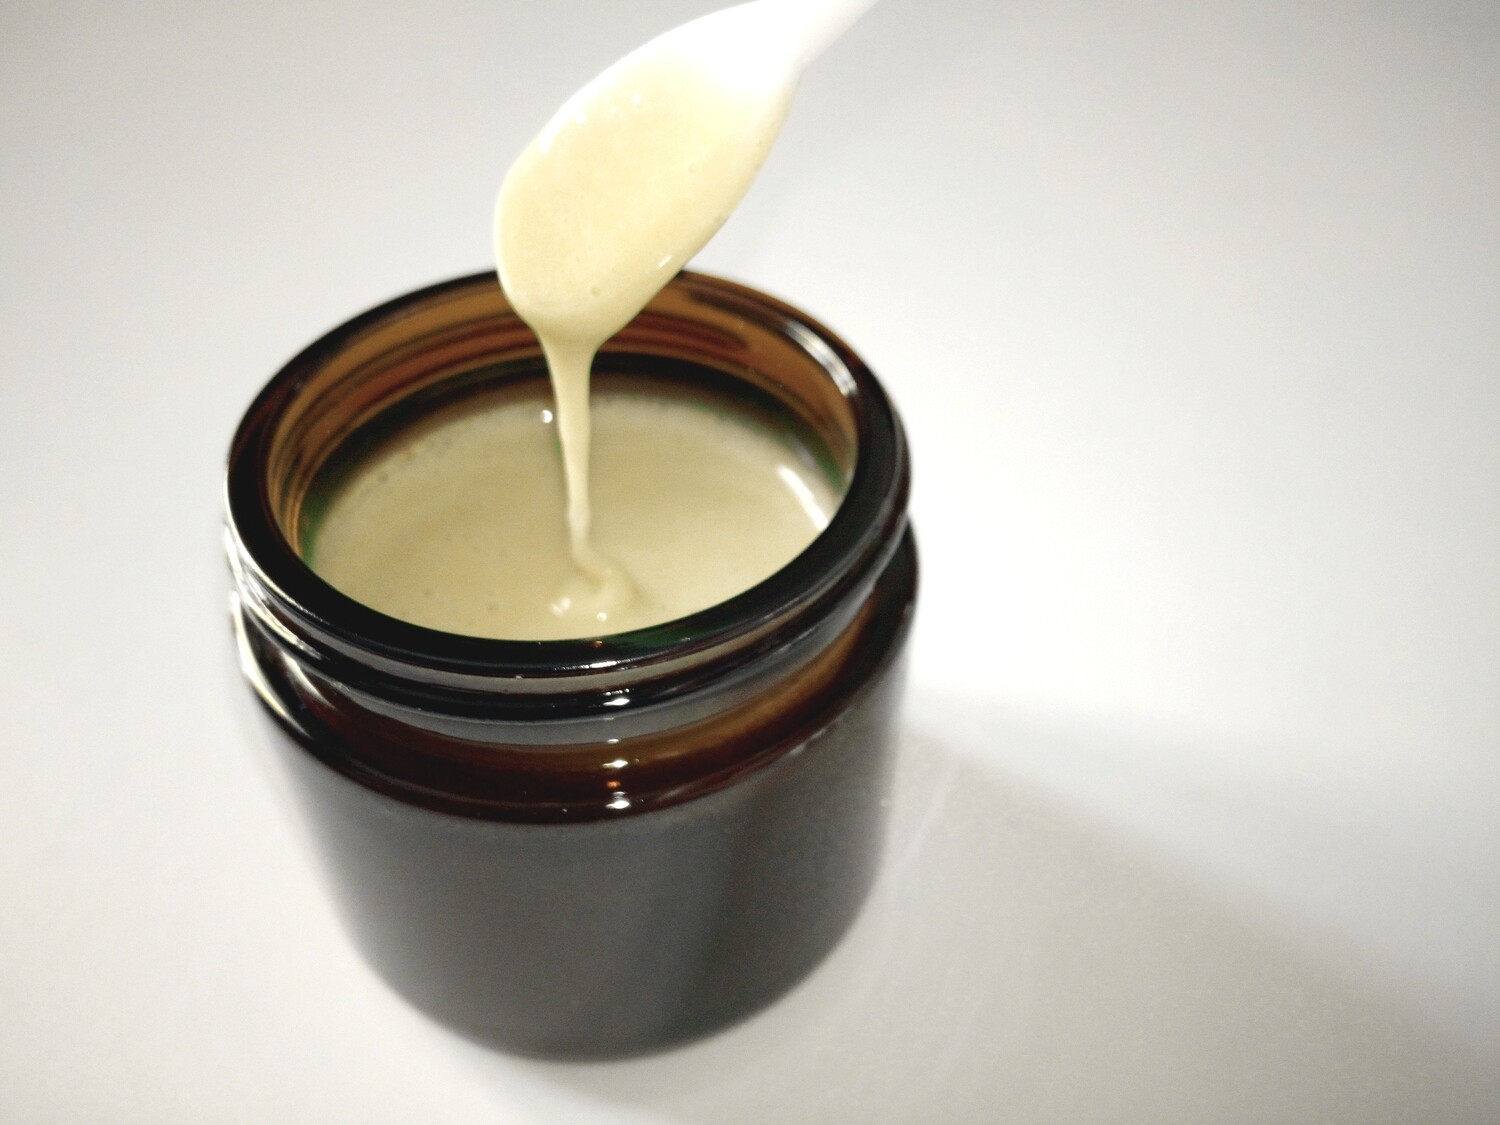 Poly Cream résine Universelle U.V nettoyable à l'eau 60 g